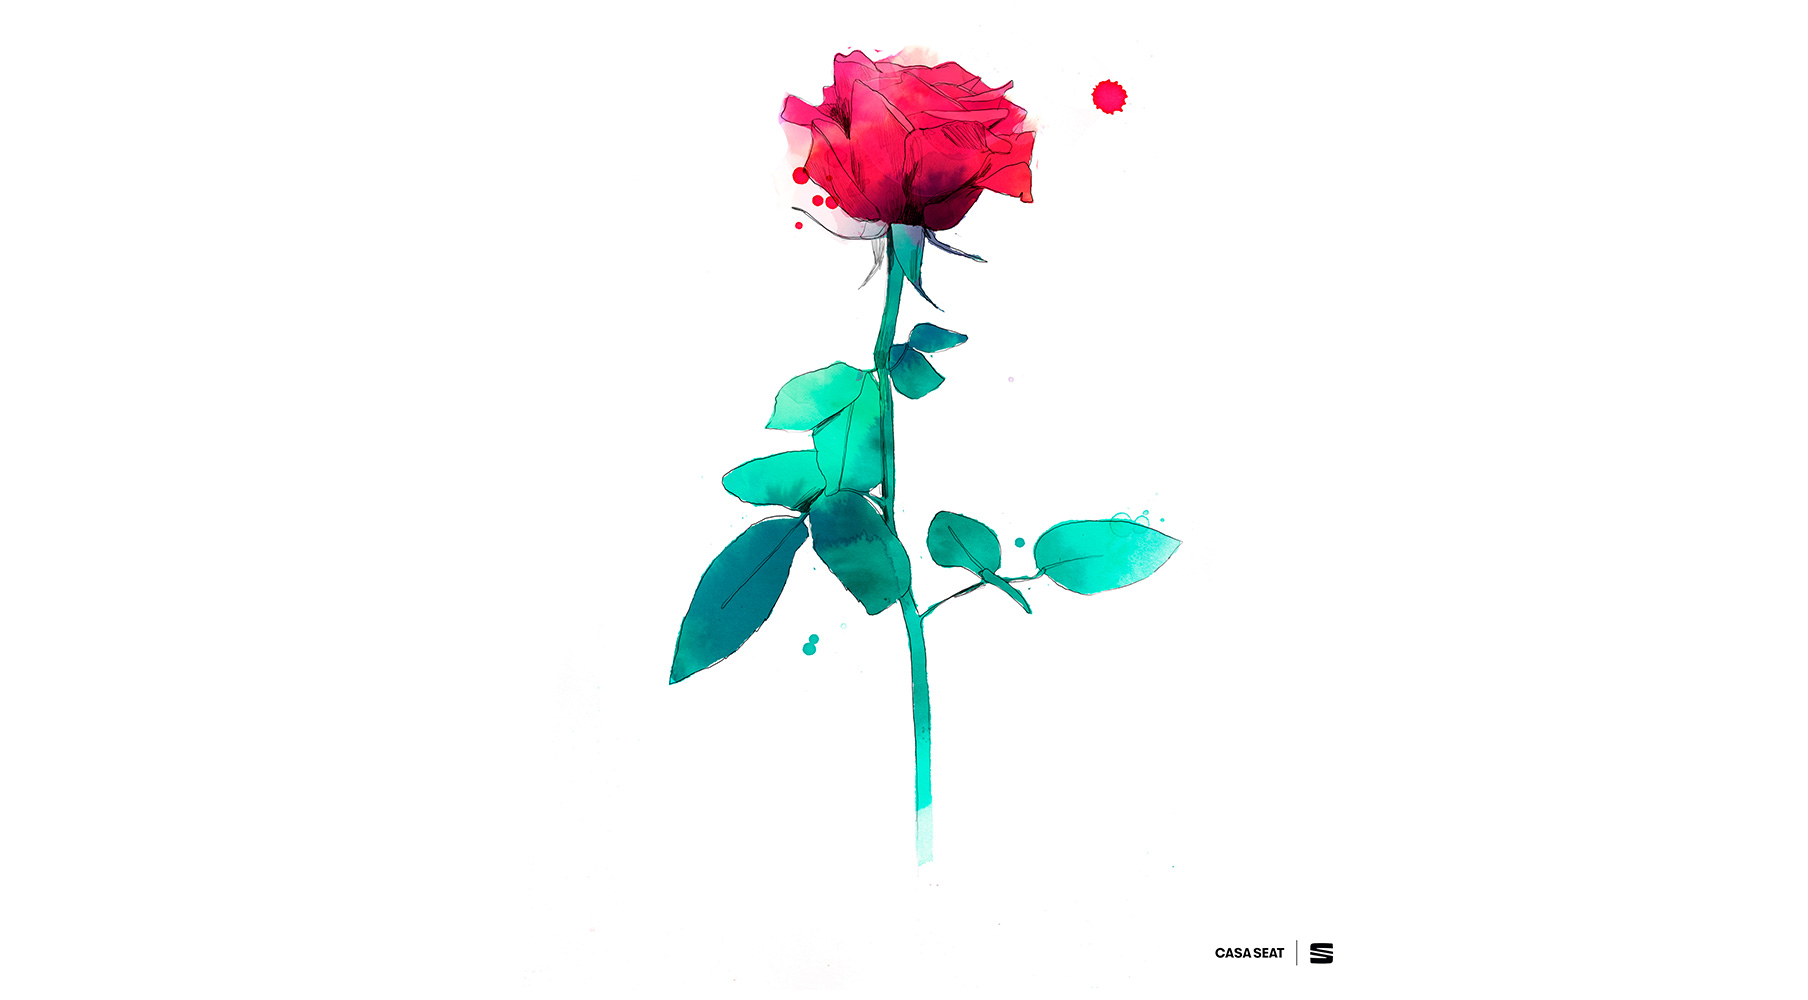 Con motivo de la celebración de Sant Jordi, enviar gratuitamente una rosa virtual diseñada en exclusiva por Conrad Roset acompañada de un poema.